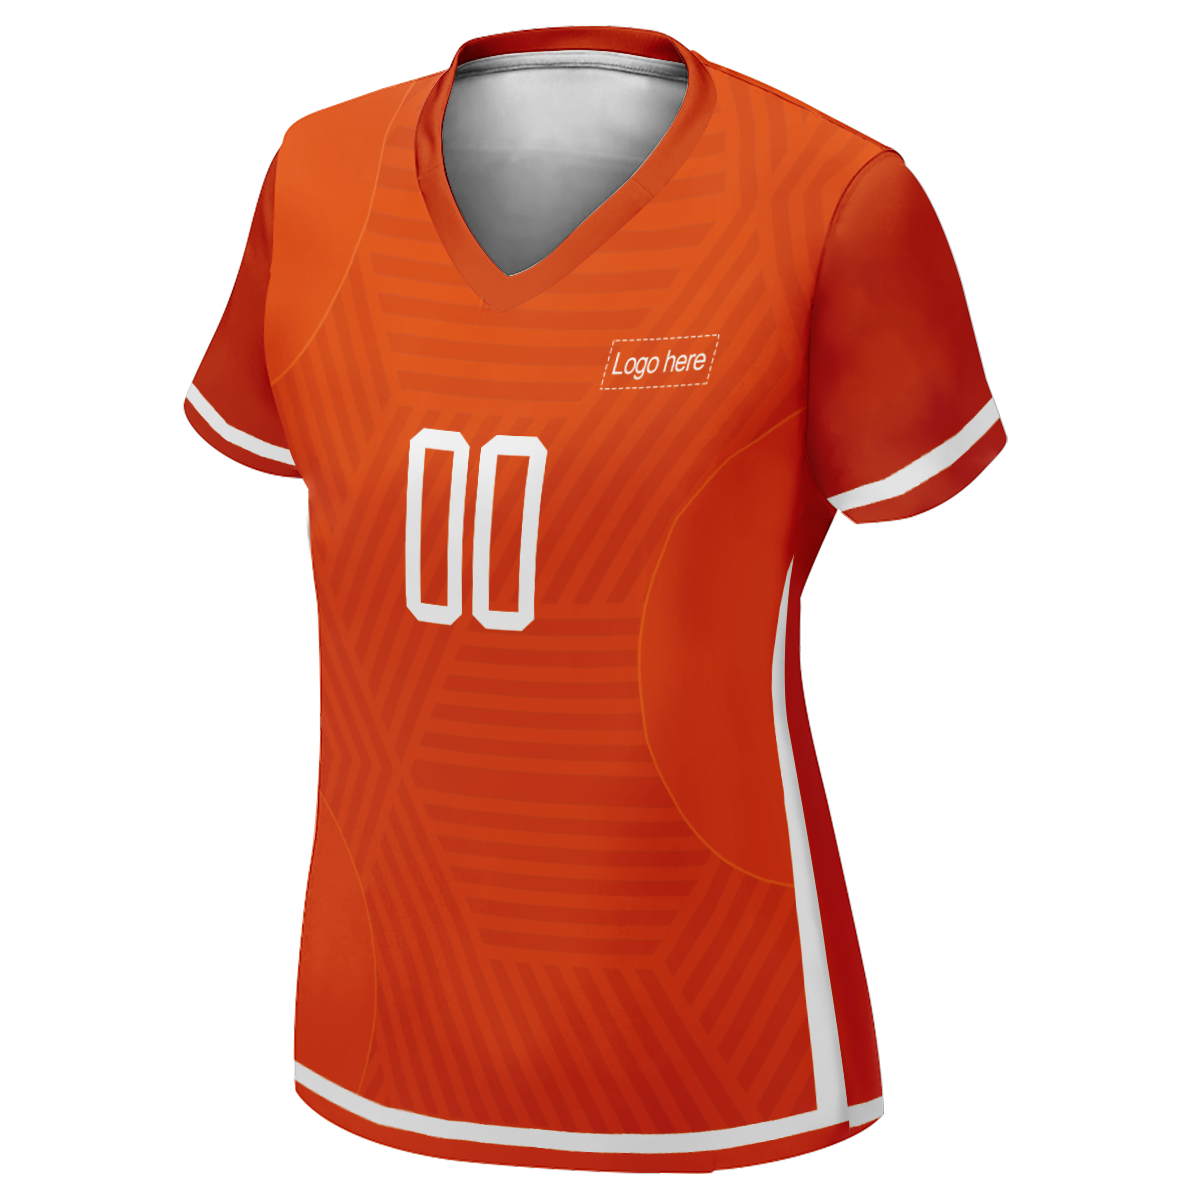 Camiseta de fútbol personalizada con imagen de la Copa Mundial de Holanda auténtica para mujer